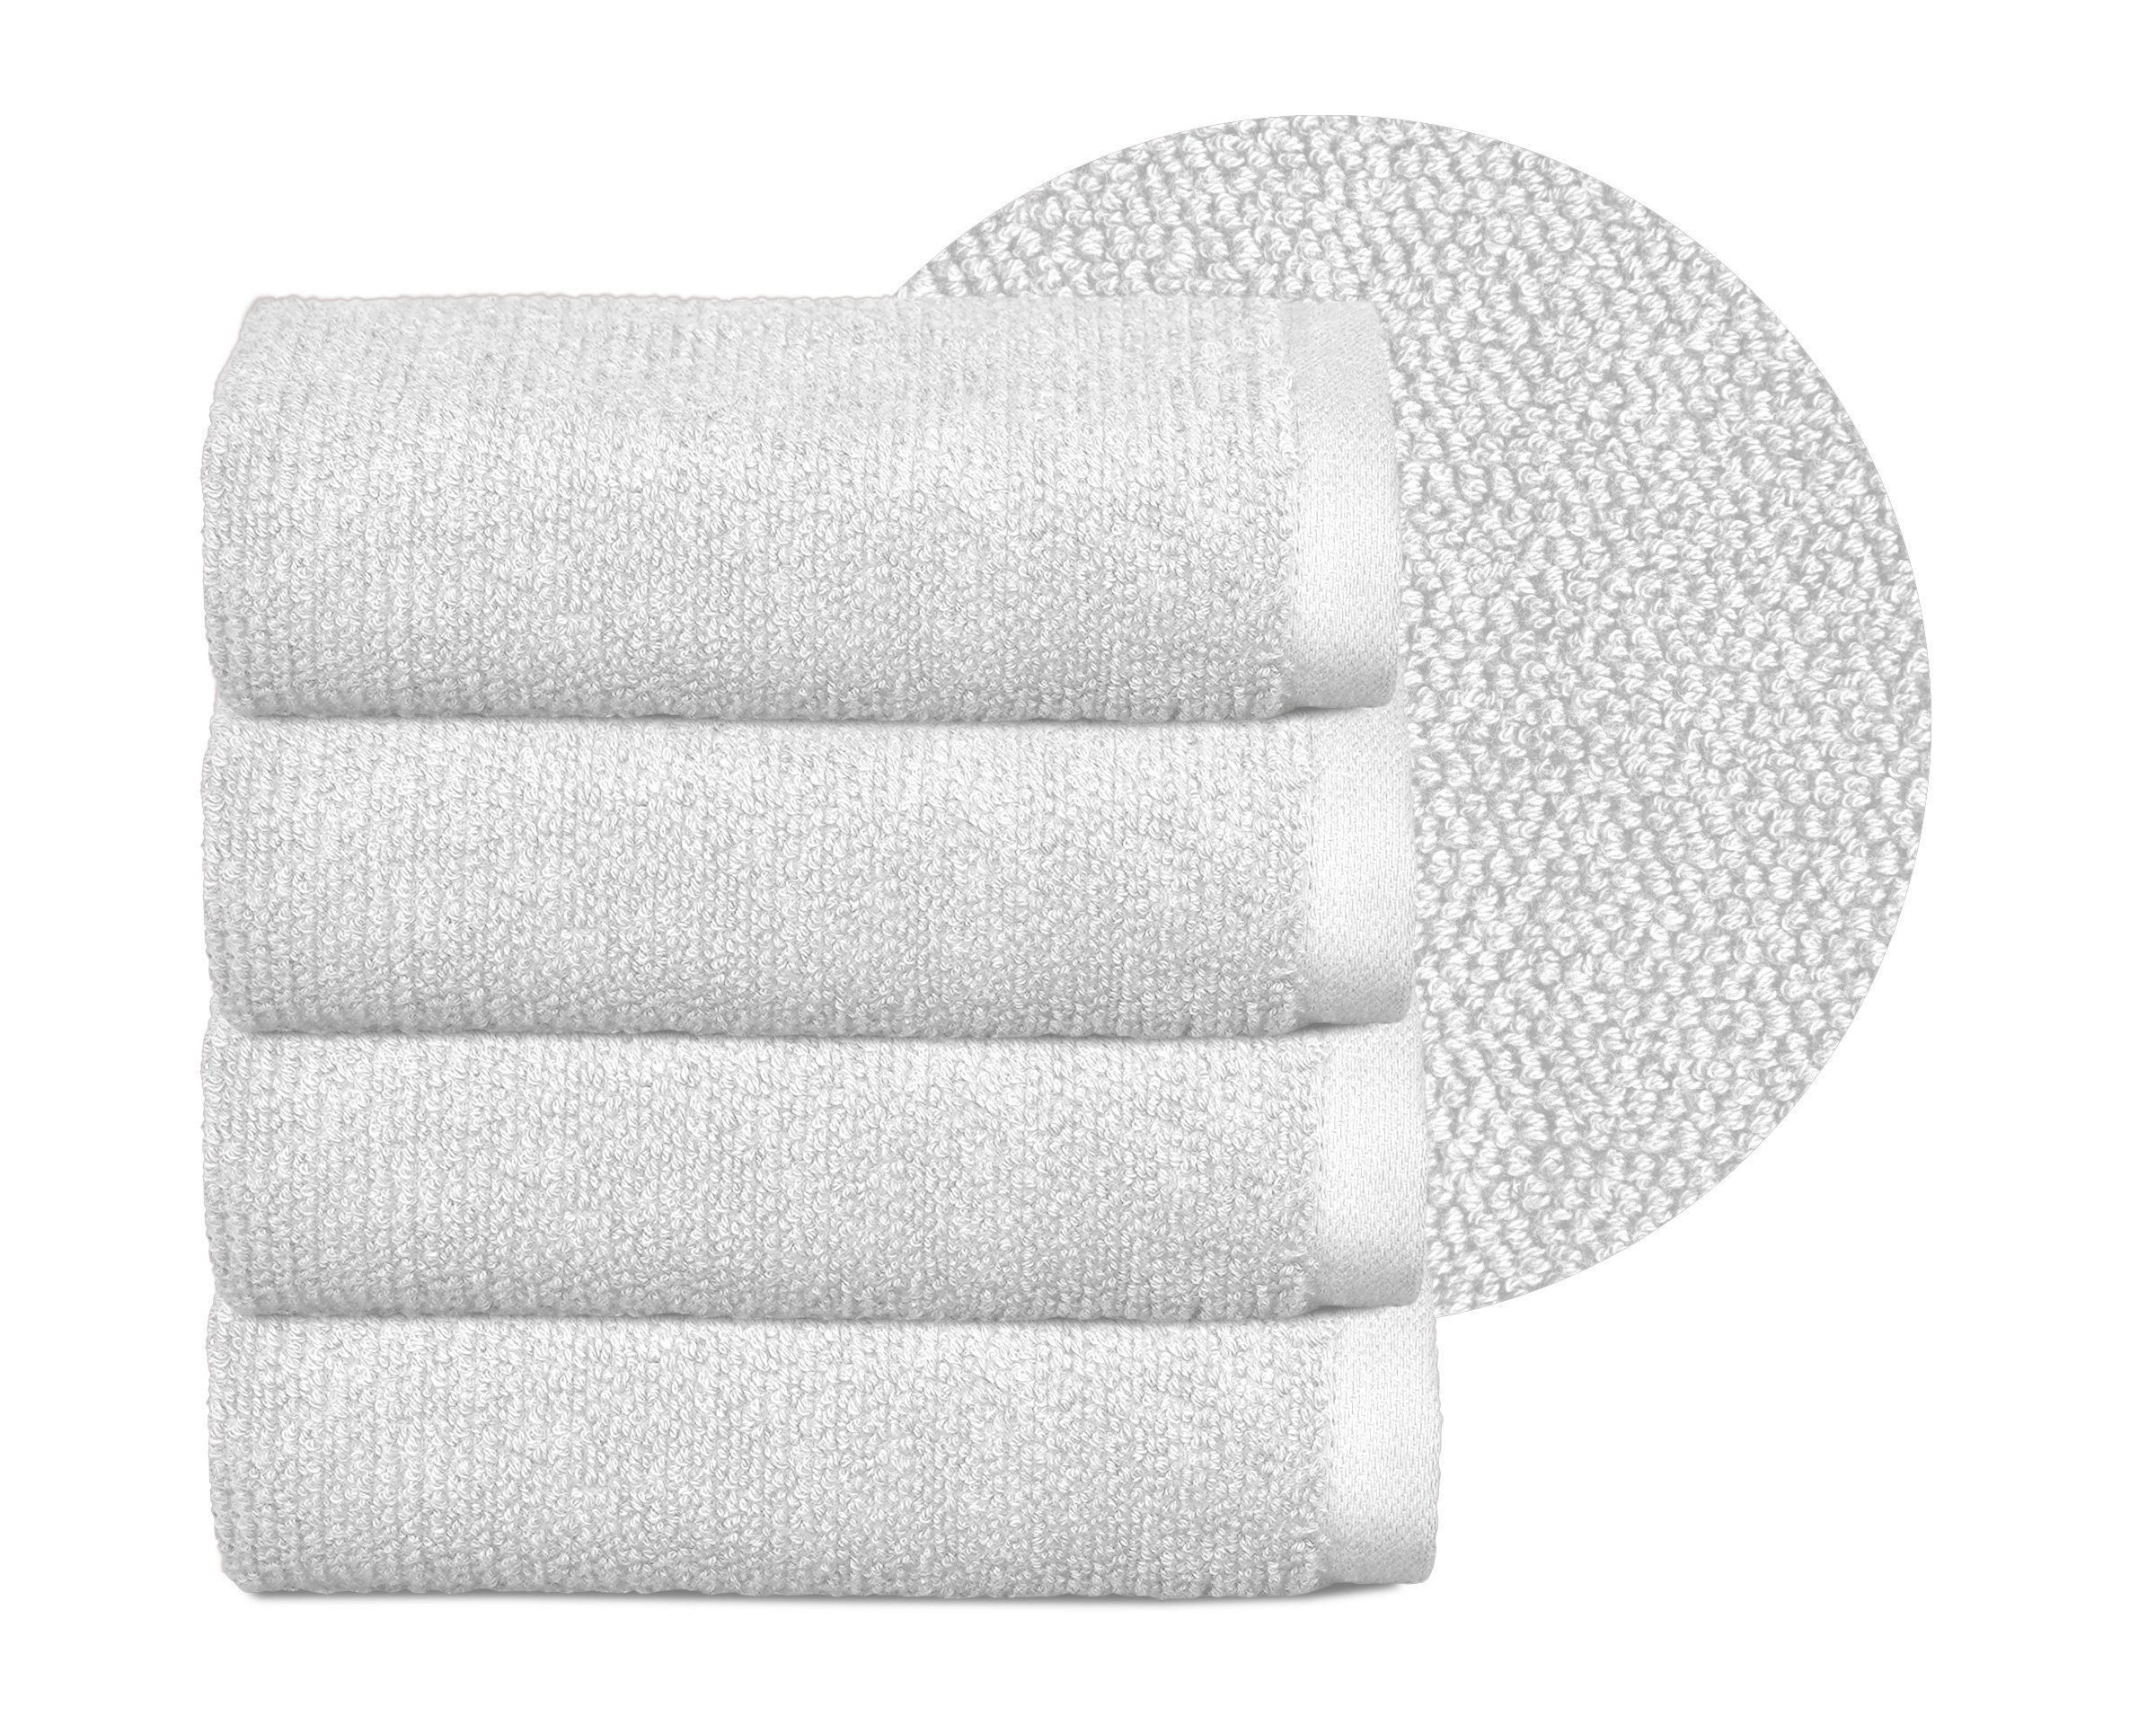 Beautex Handtuch Set Handtuch Set, Made in Europe, Frottier, (Multischlaufen-Optik, Frottier Premium Set aus 100% Baumwolle 550g/m) Weiß | Handtuch-Sets